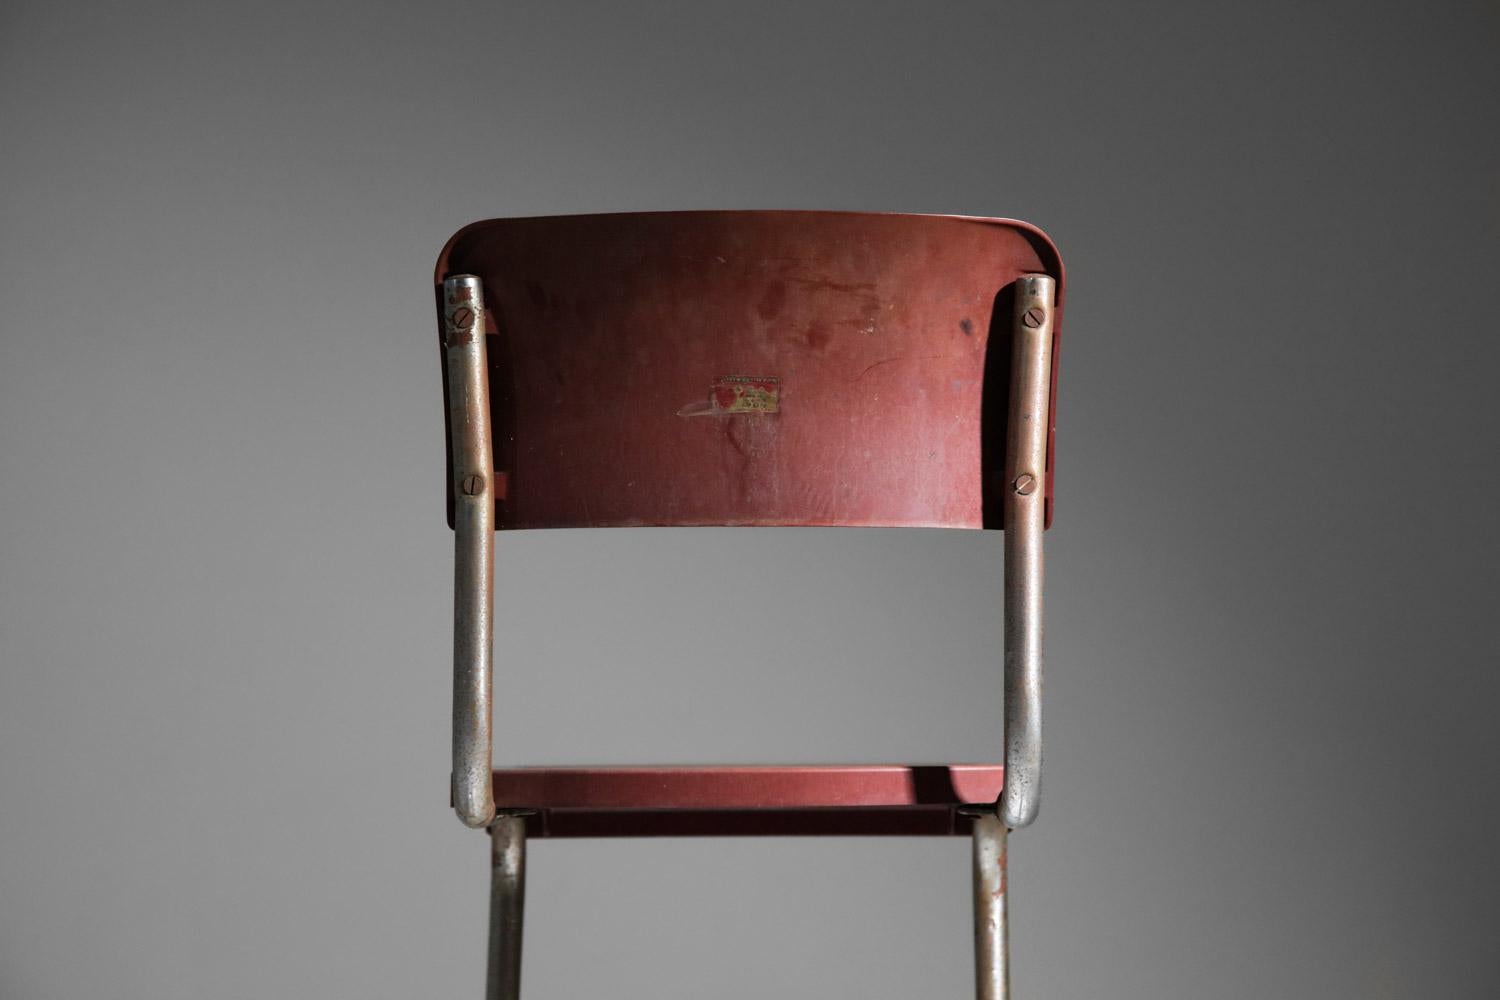 chrome tube bakelite chair in style of Emile Guillot art deco modernist breuer For Sale 1